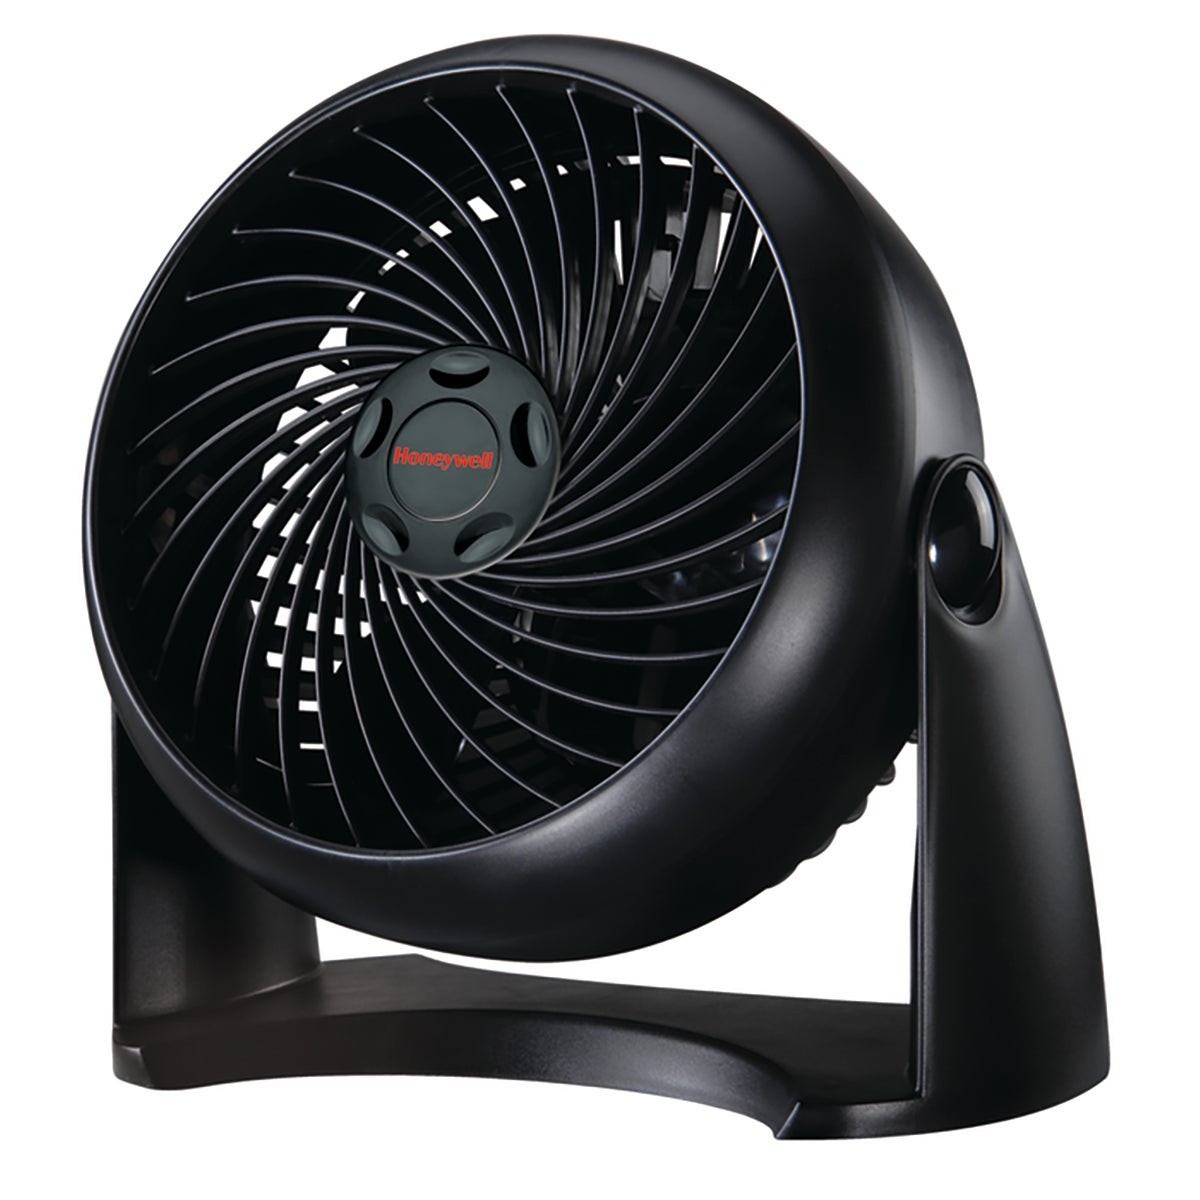 TurboForce Air Circulator Fan Black